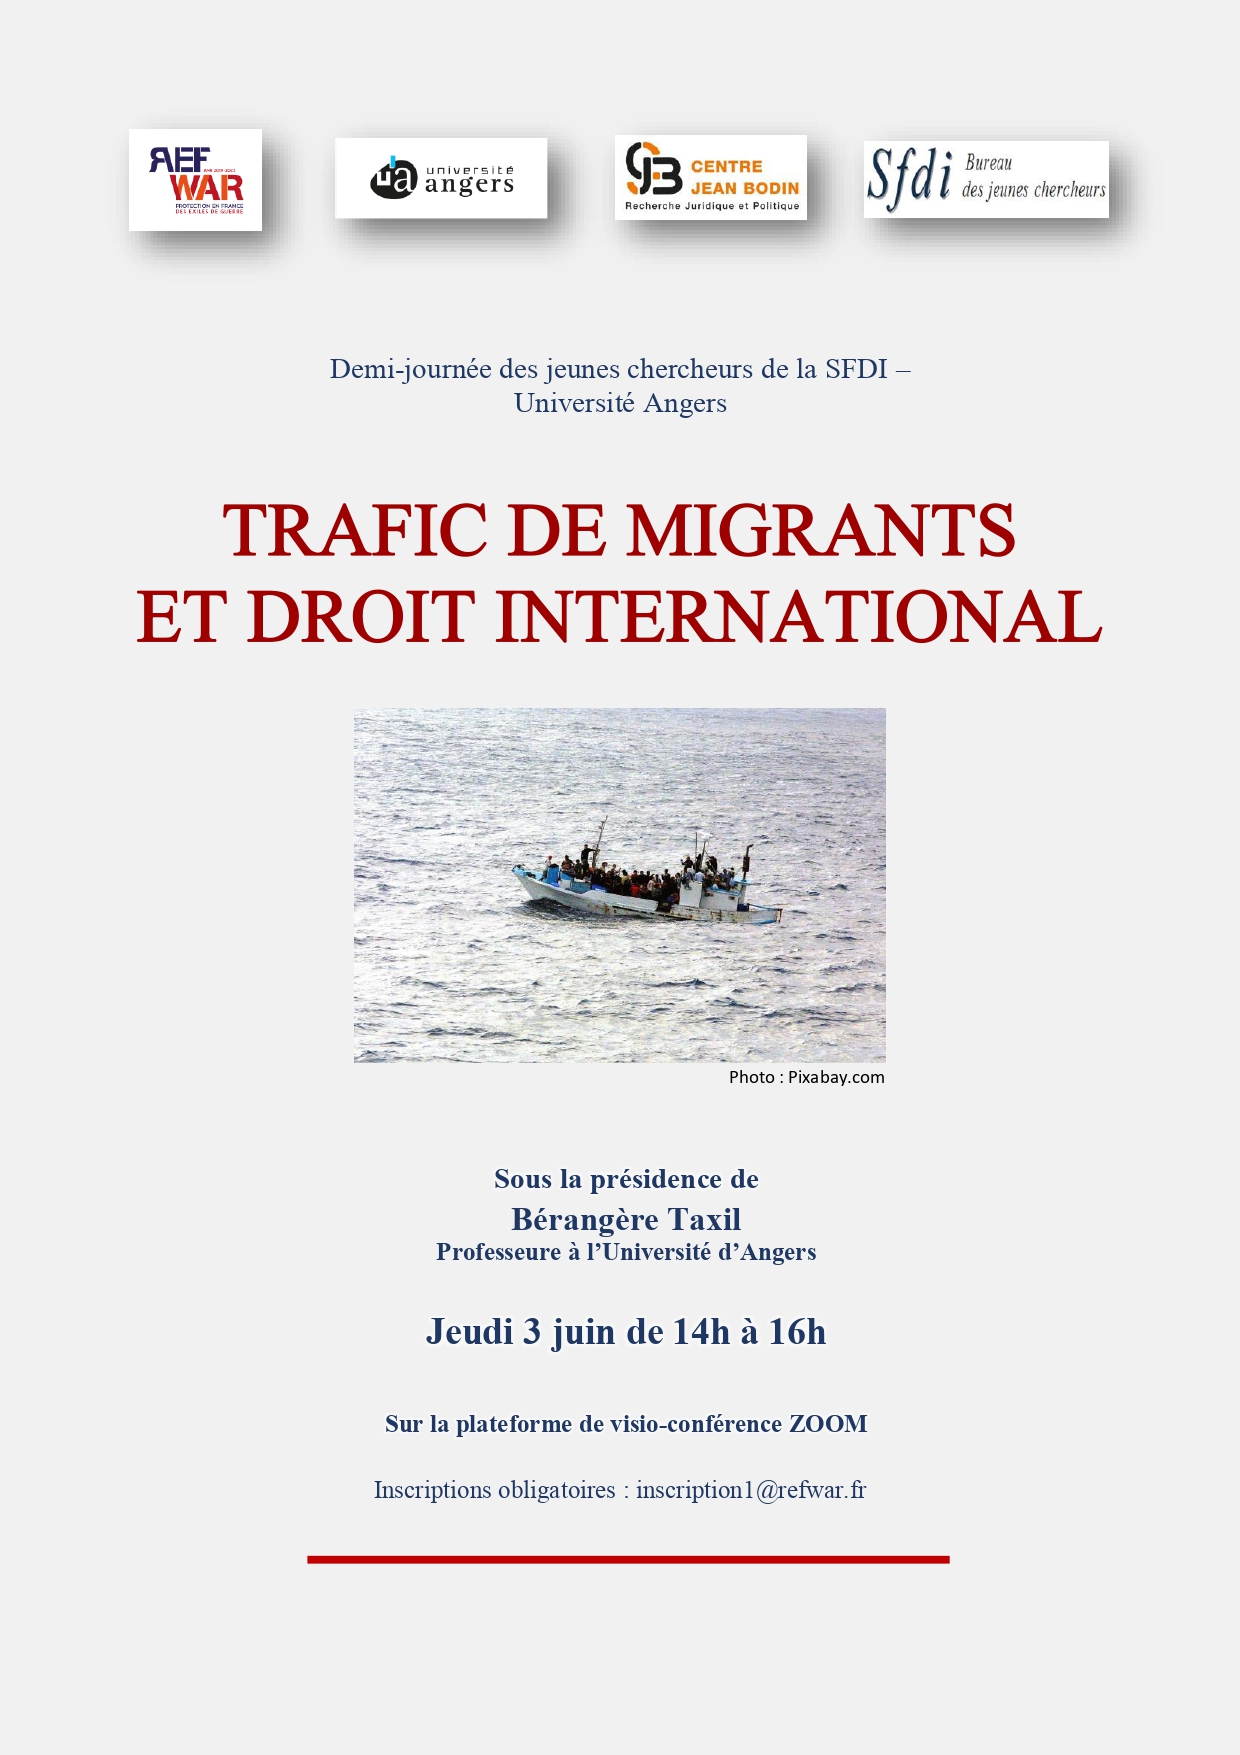 Première demi-journée des jeunes chercheurs de la SFDI  : « Trafic de migrants et droit international »